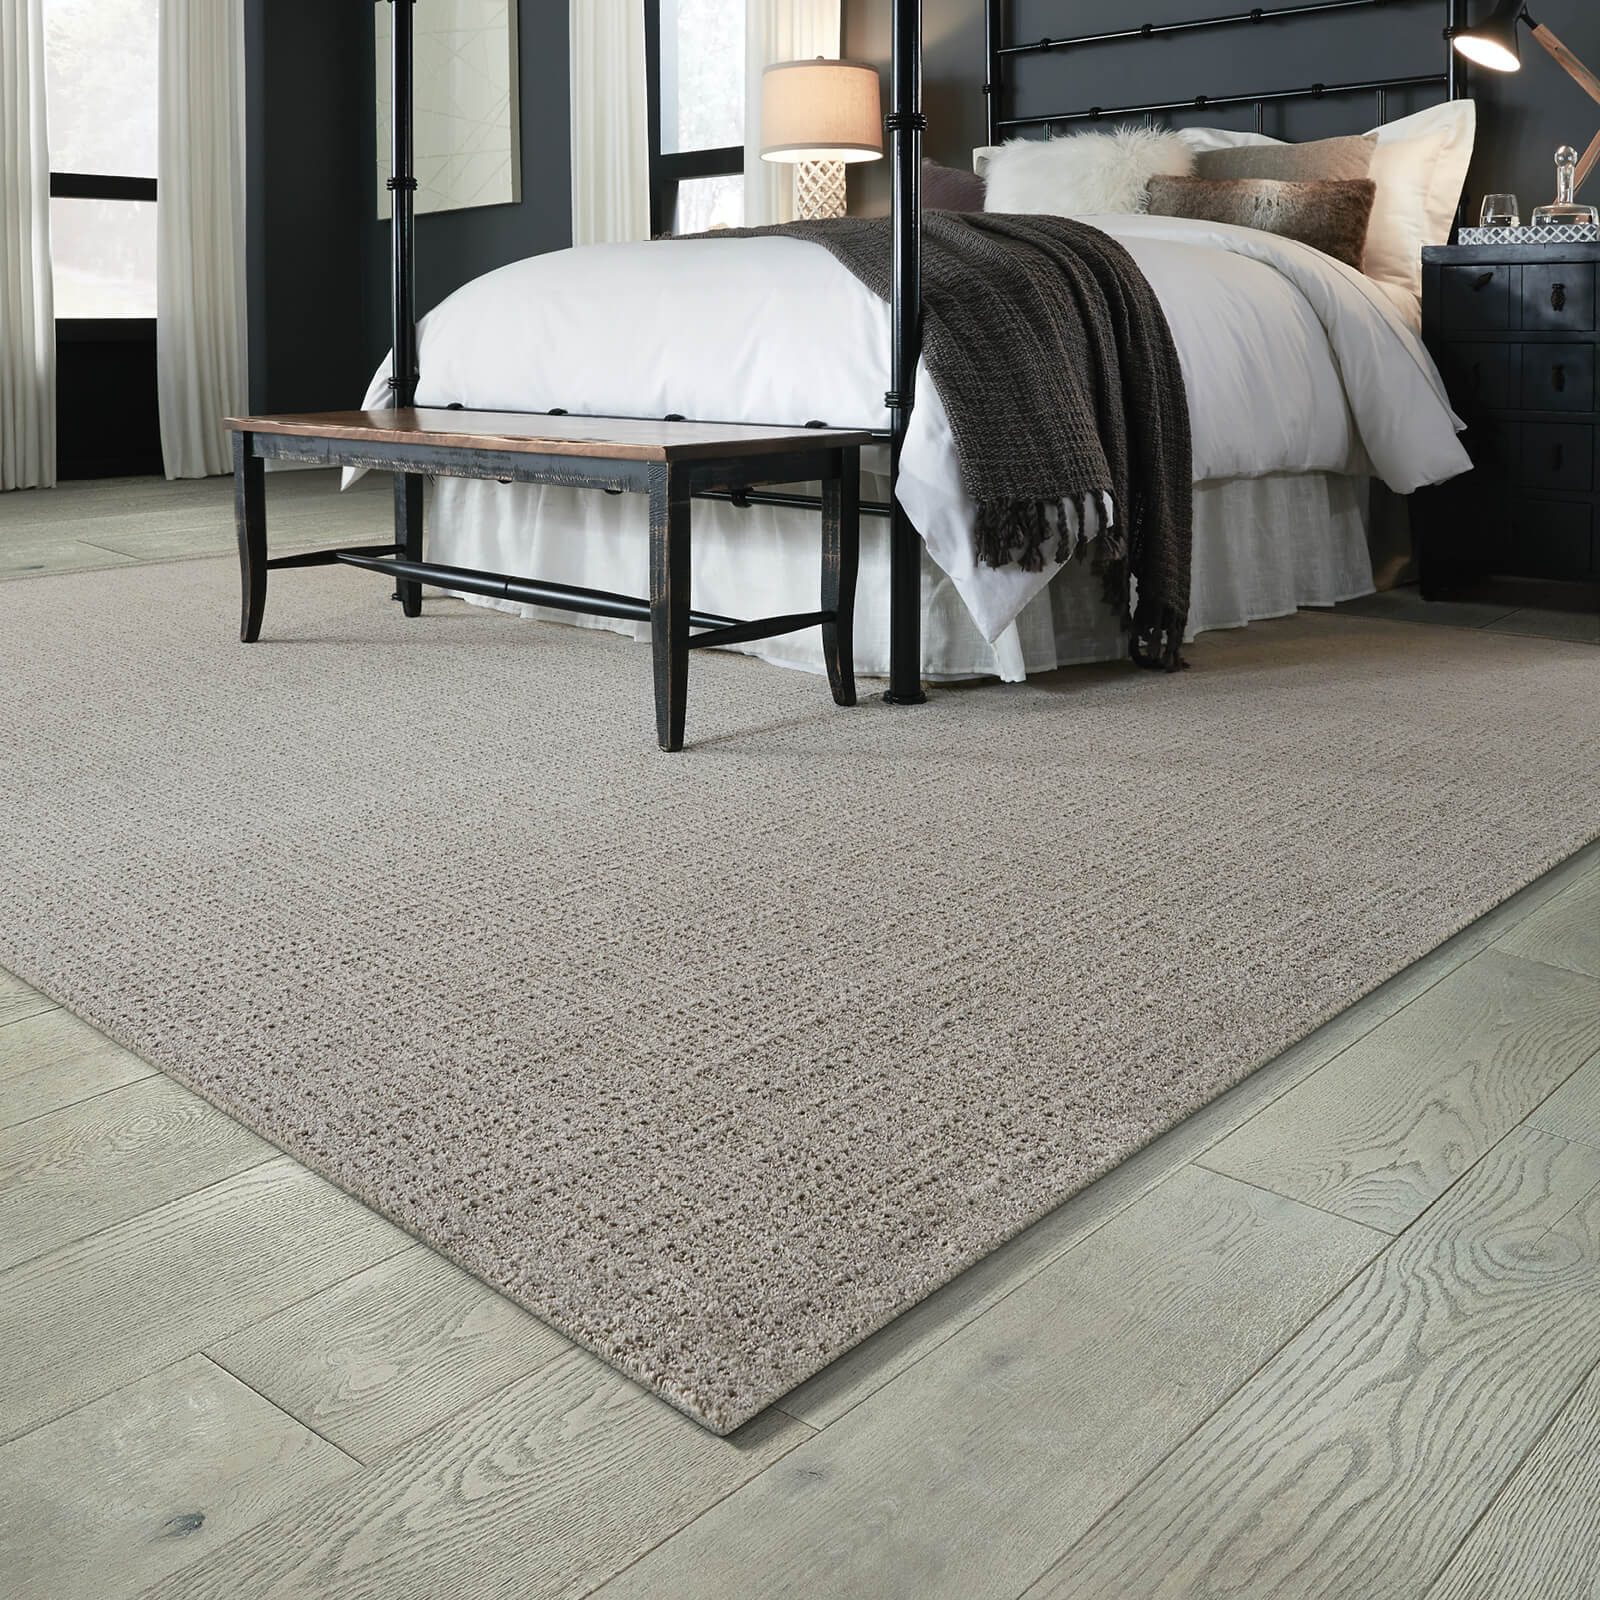 Bedroom flooring| Vic's Carpet & Flooring